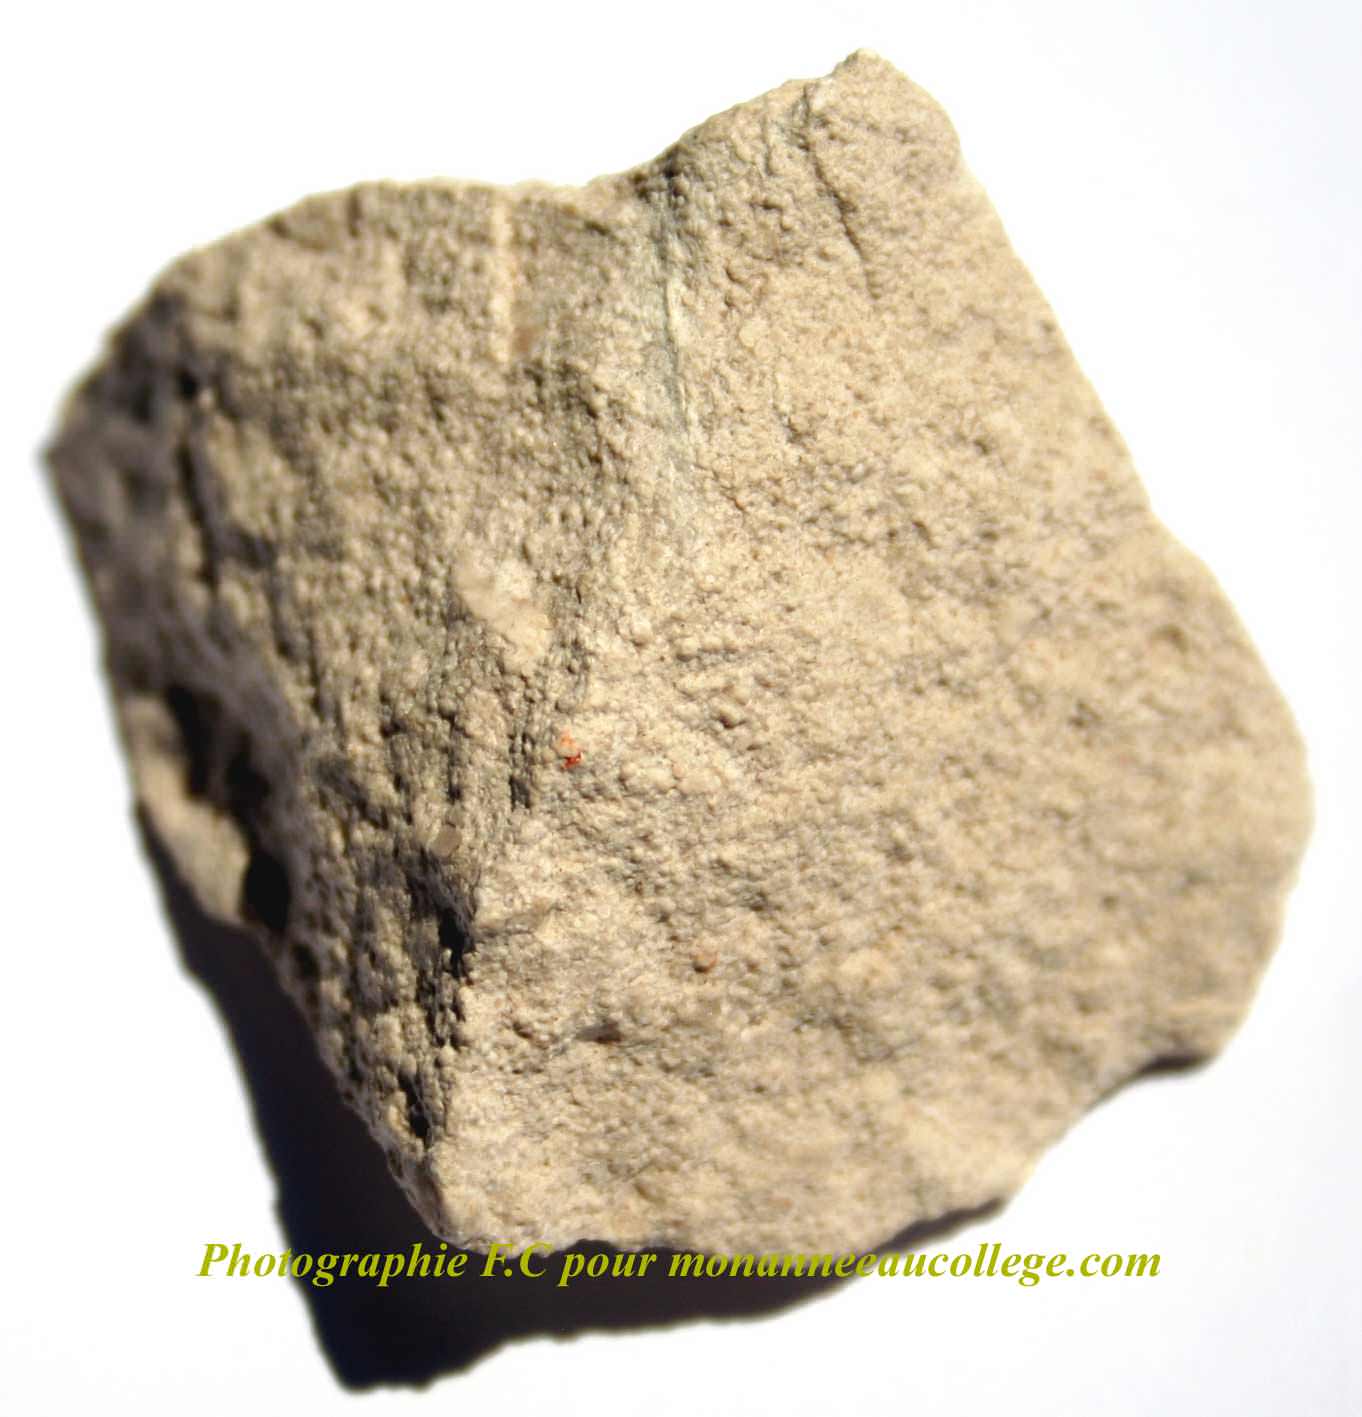 Calcaire sublithographique à débit en dalles : le « Calcaire de